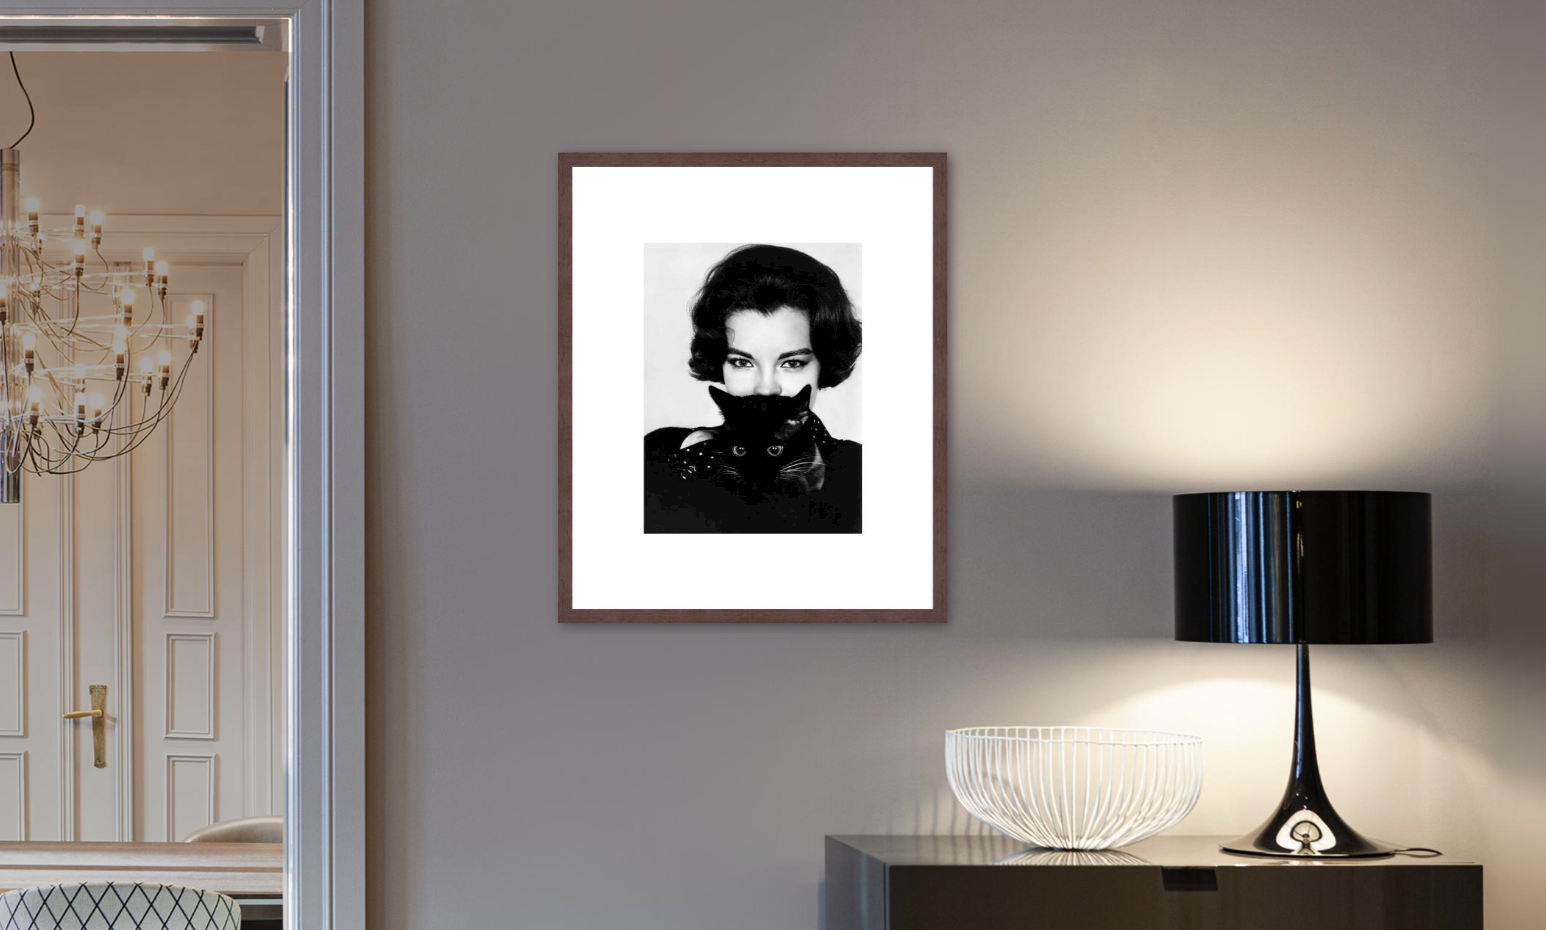 Framed black and white portrait of Audrey Hepburn in a modern living room setup